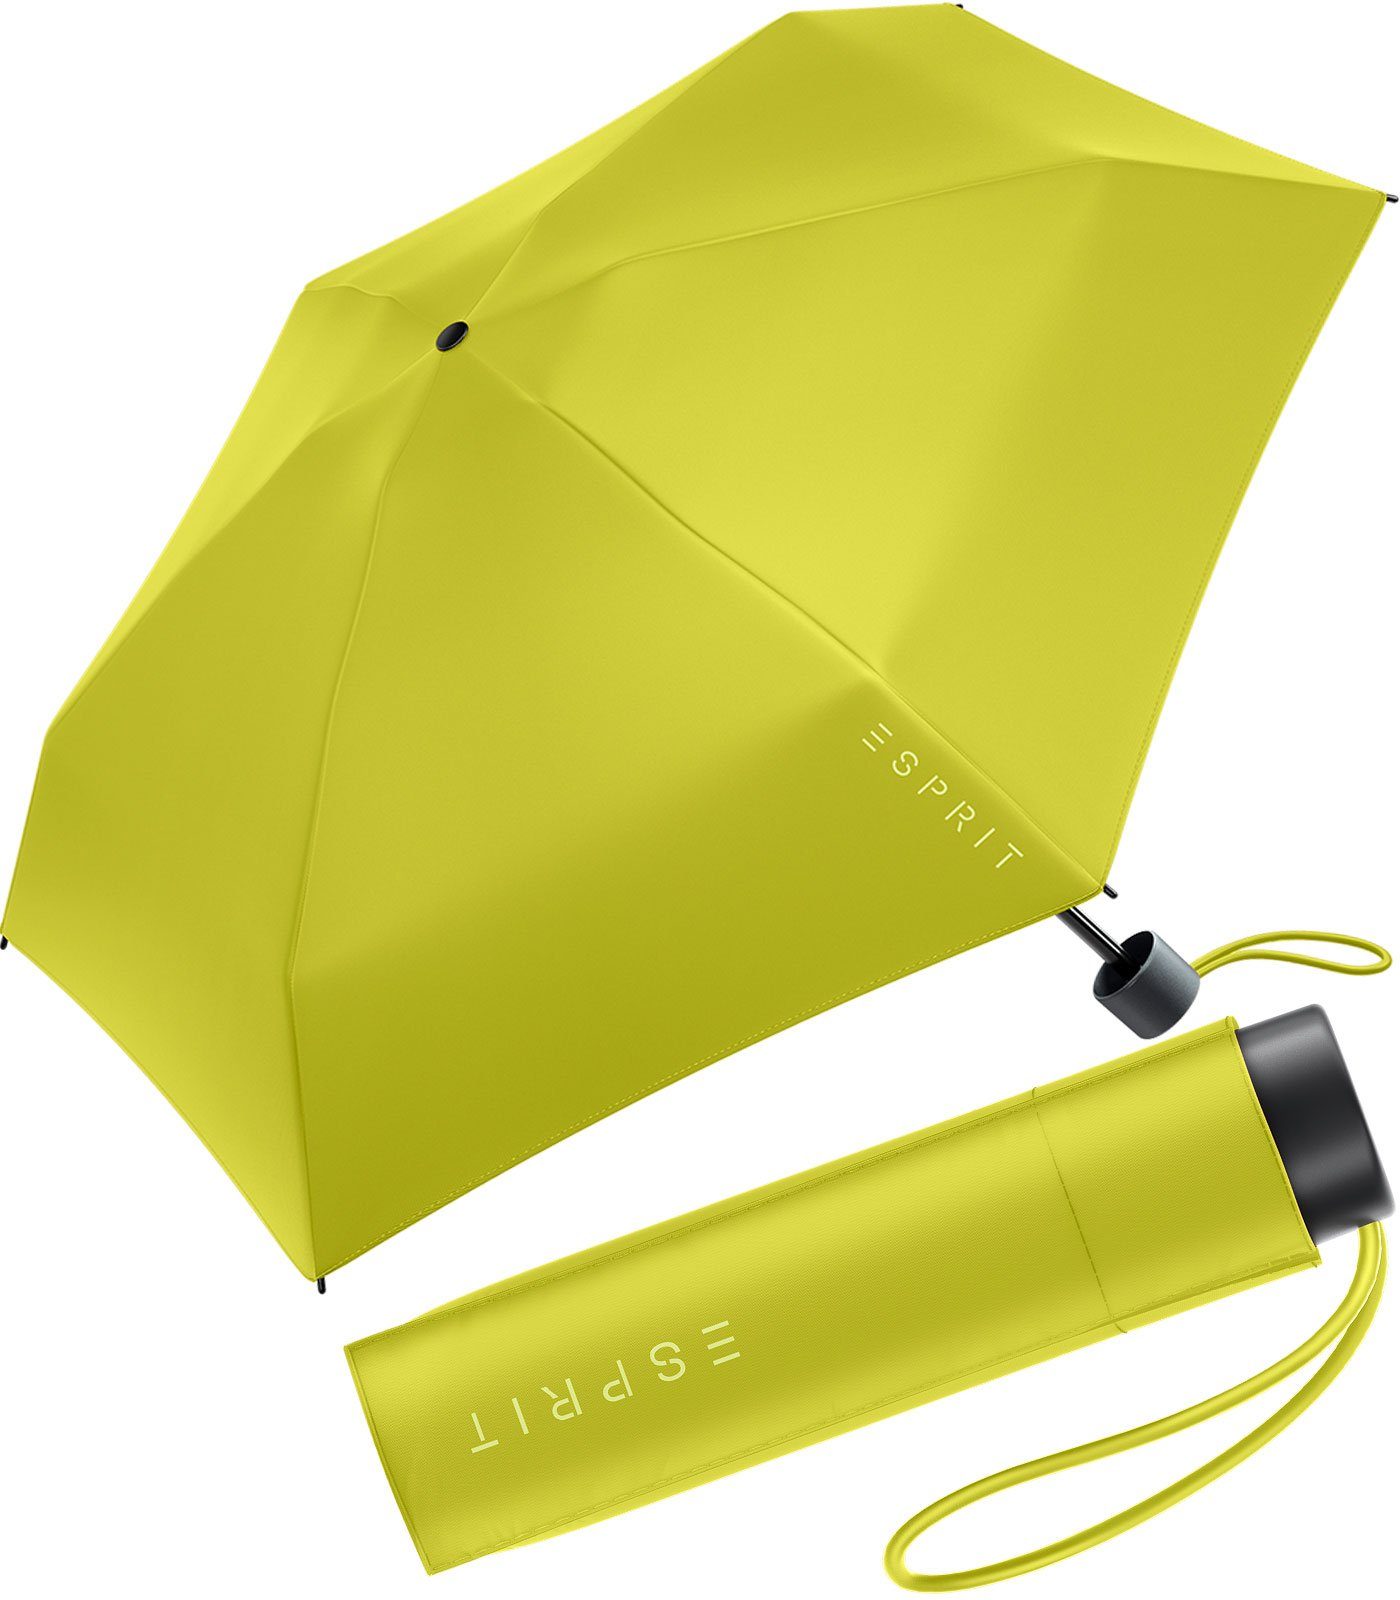 Esprit Langregenschirm Damen Super Mini - 2023, grün den in neuen Petito apple Trendfarben green HW Regenschirm